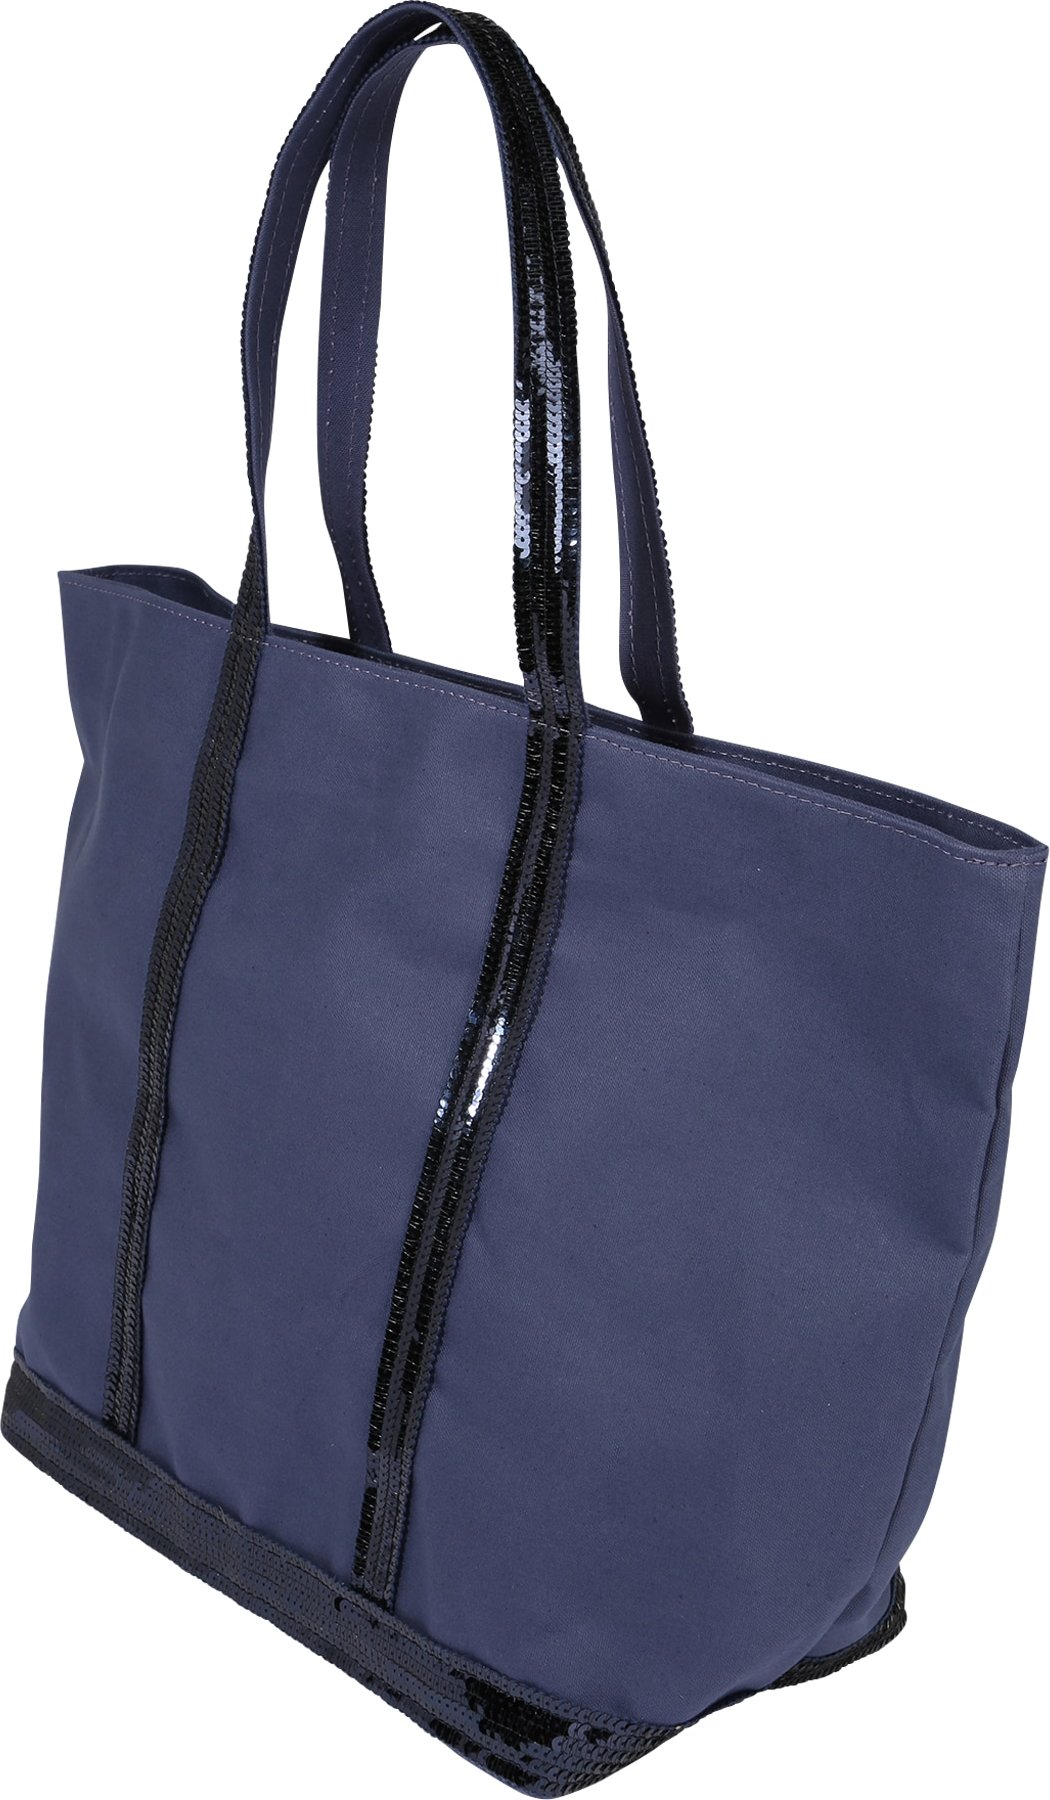 Vanessa Bruno Nákupní taška 'CABAS' chladná modrá / námořnická modř